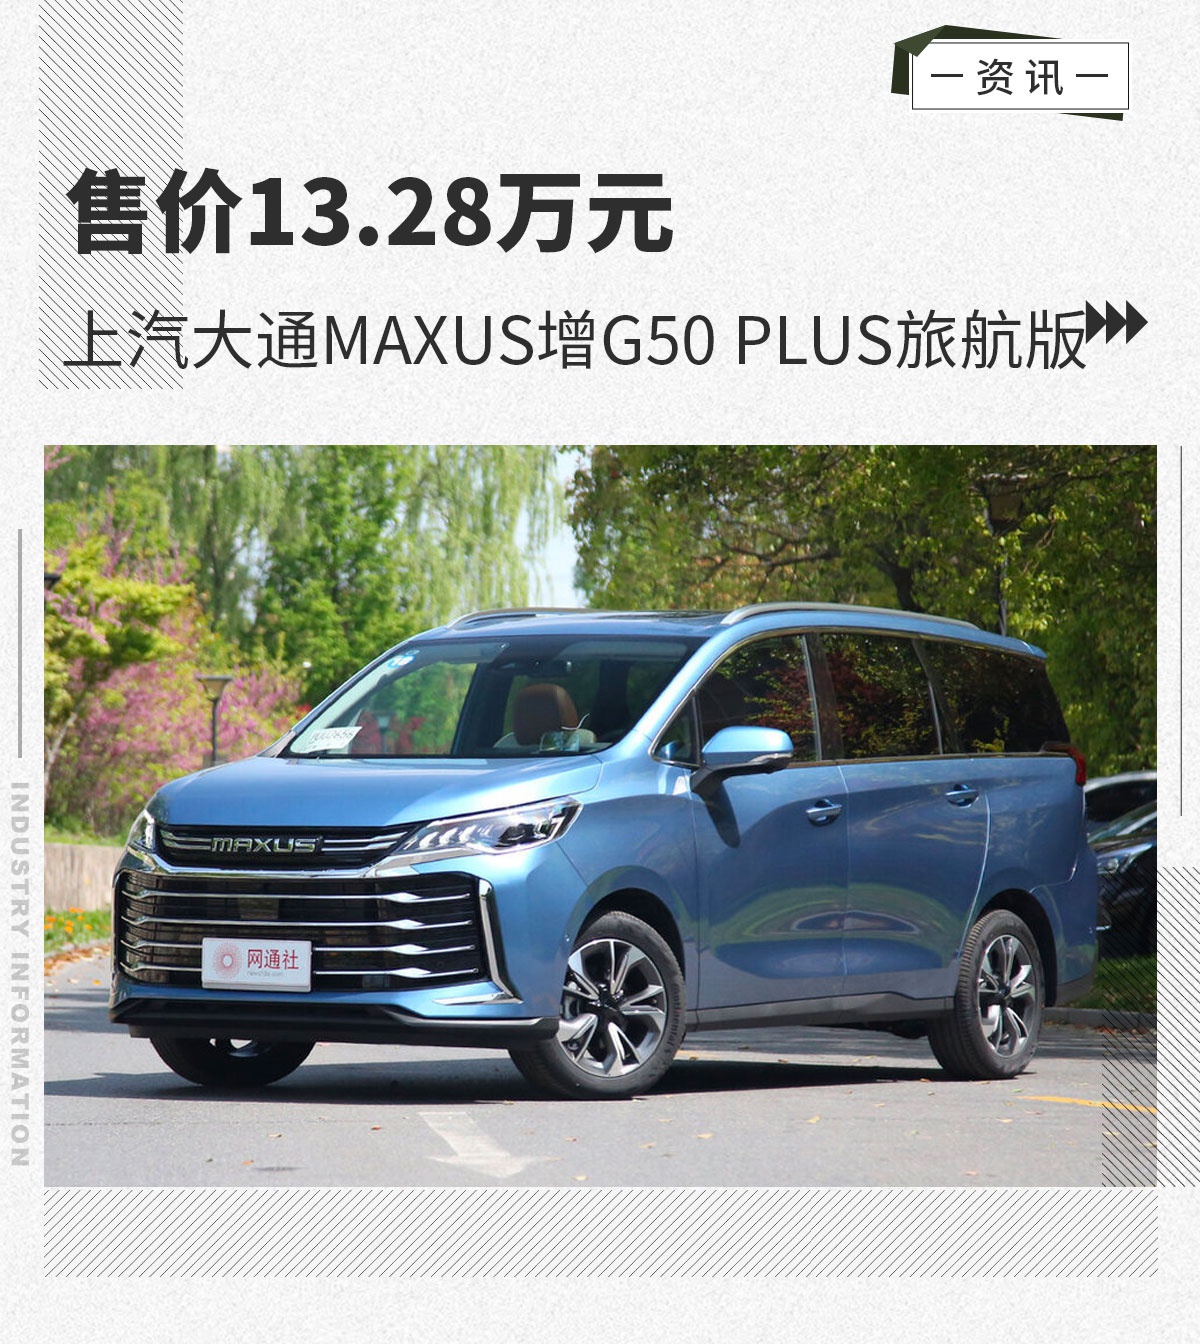 上汽大通MAXUS增G50 PLUS旅航版售价13.28万元